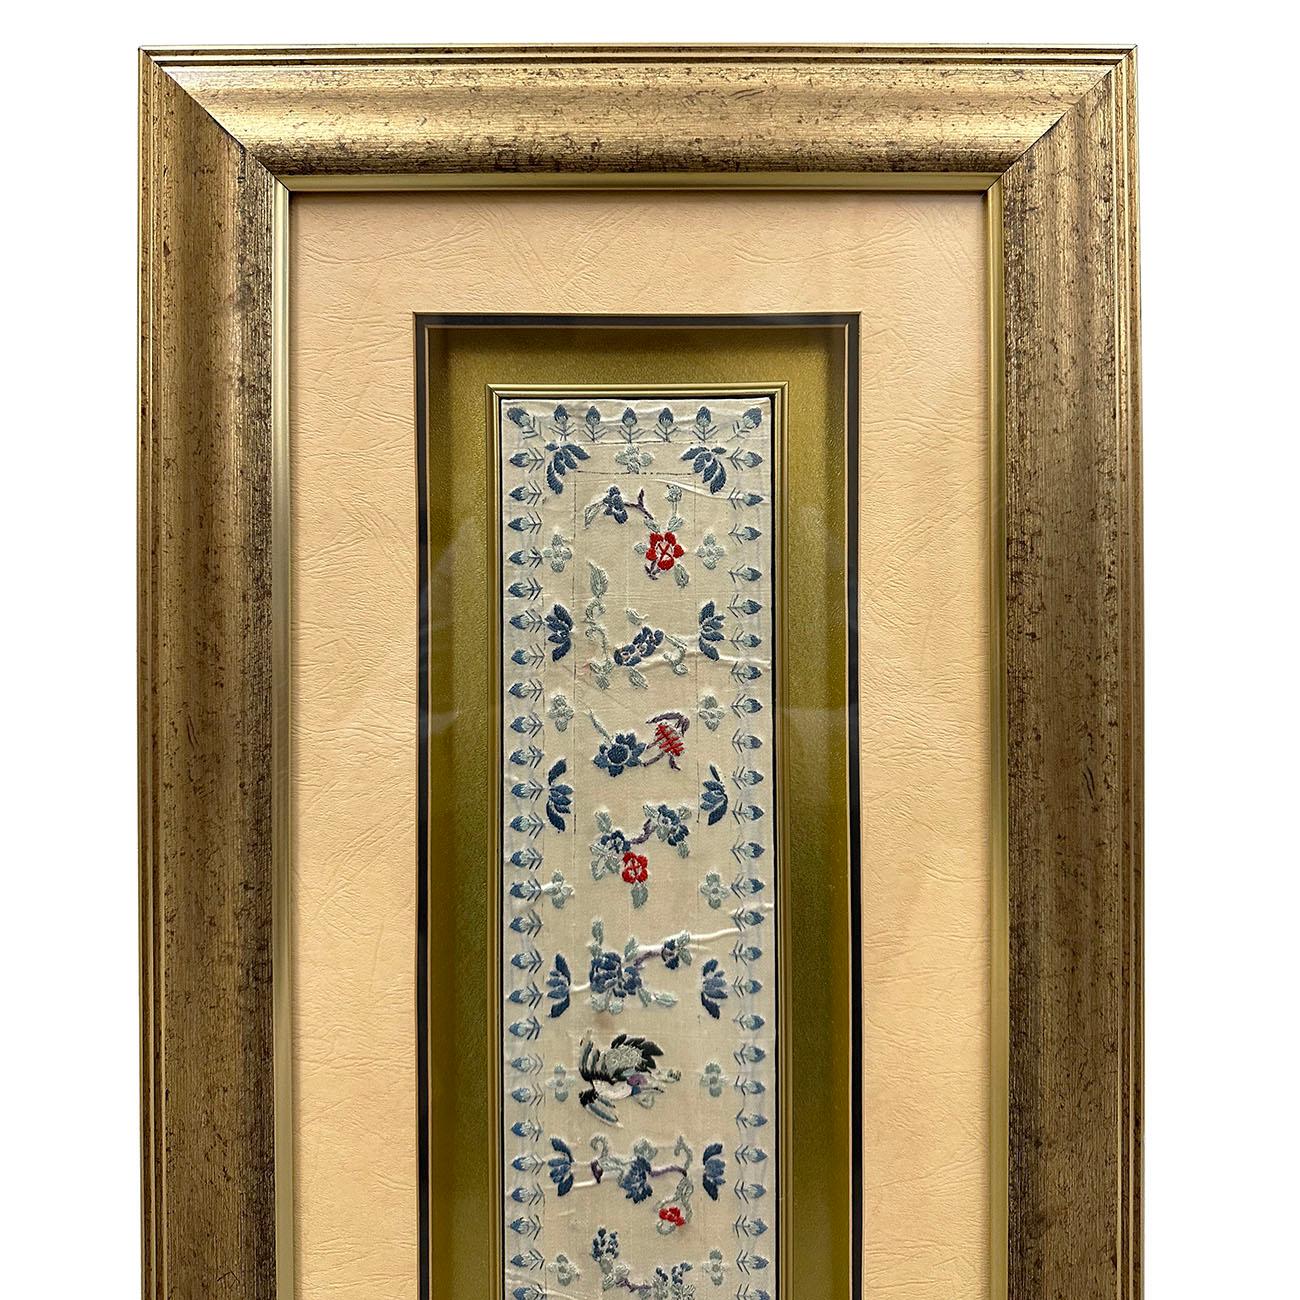 

Eine antike chinesische Seidenstickerei in 3D gerahmt. Die Wanddekoration in Museumsqualität. Es gibt zahlreiche glücksverheißende Symbole und Vögel, florale Stickereien aus farbigen Seidenfäden, wie Vögel und Pfingstrosen etc.etc. Die Textilien